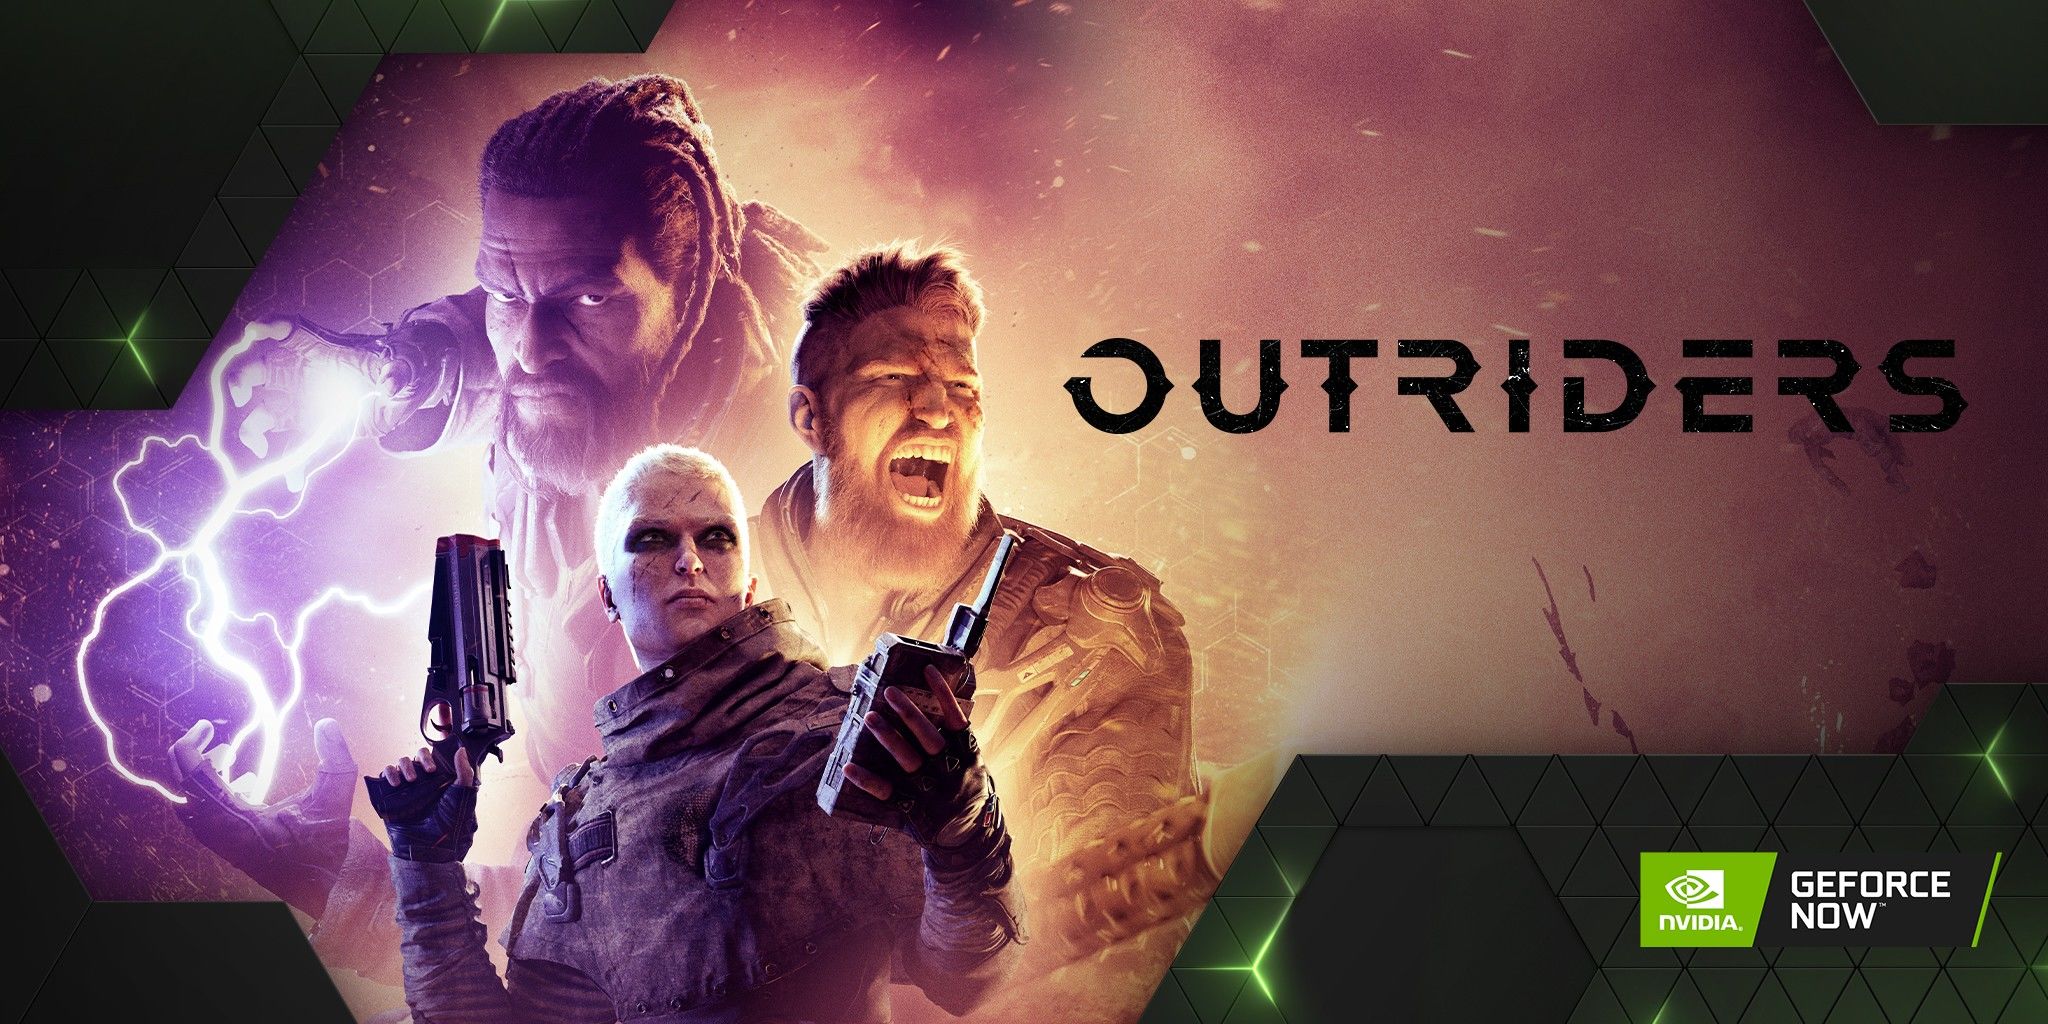 GeForce Now'a Outriders demosu dahil 12 oyun eklendi